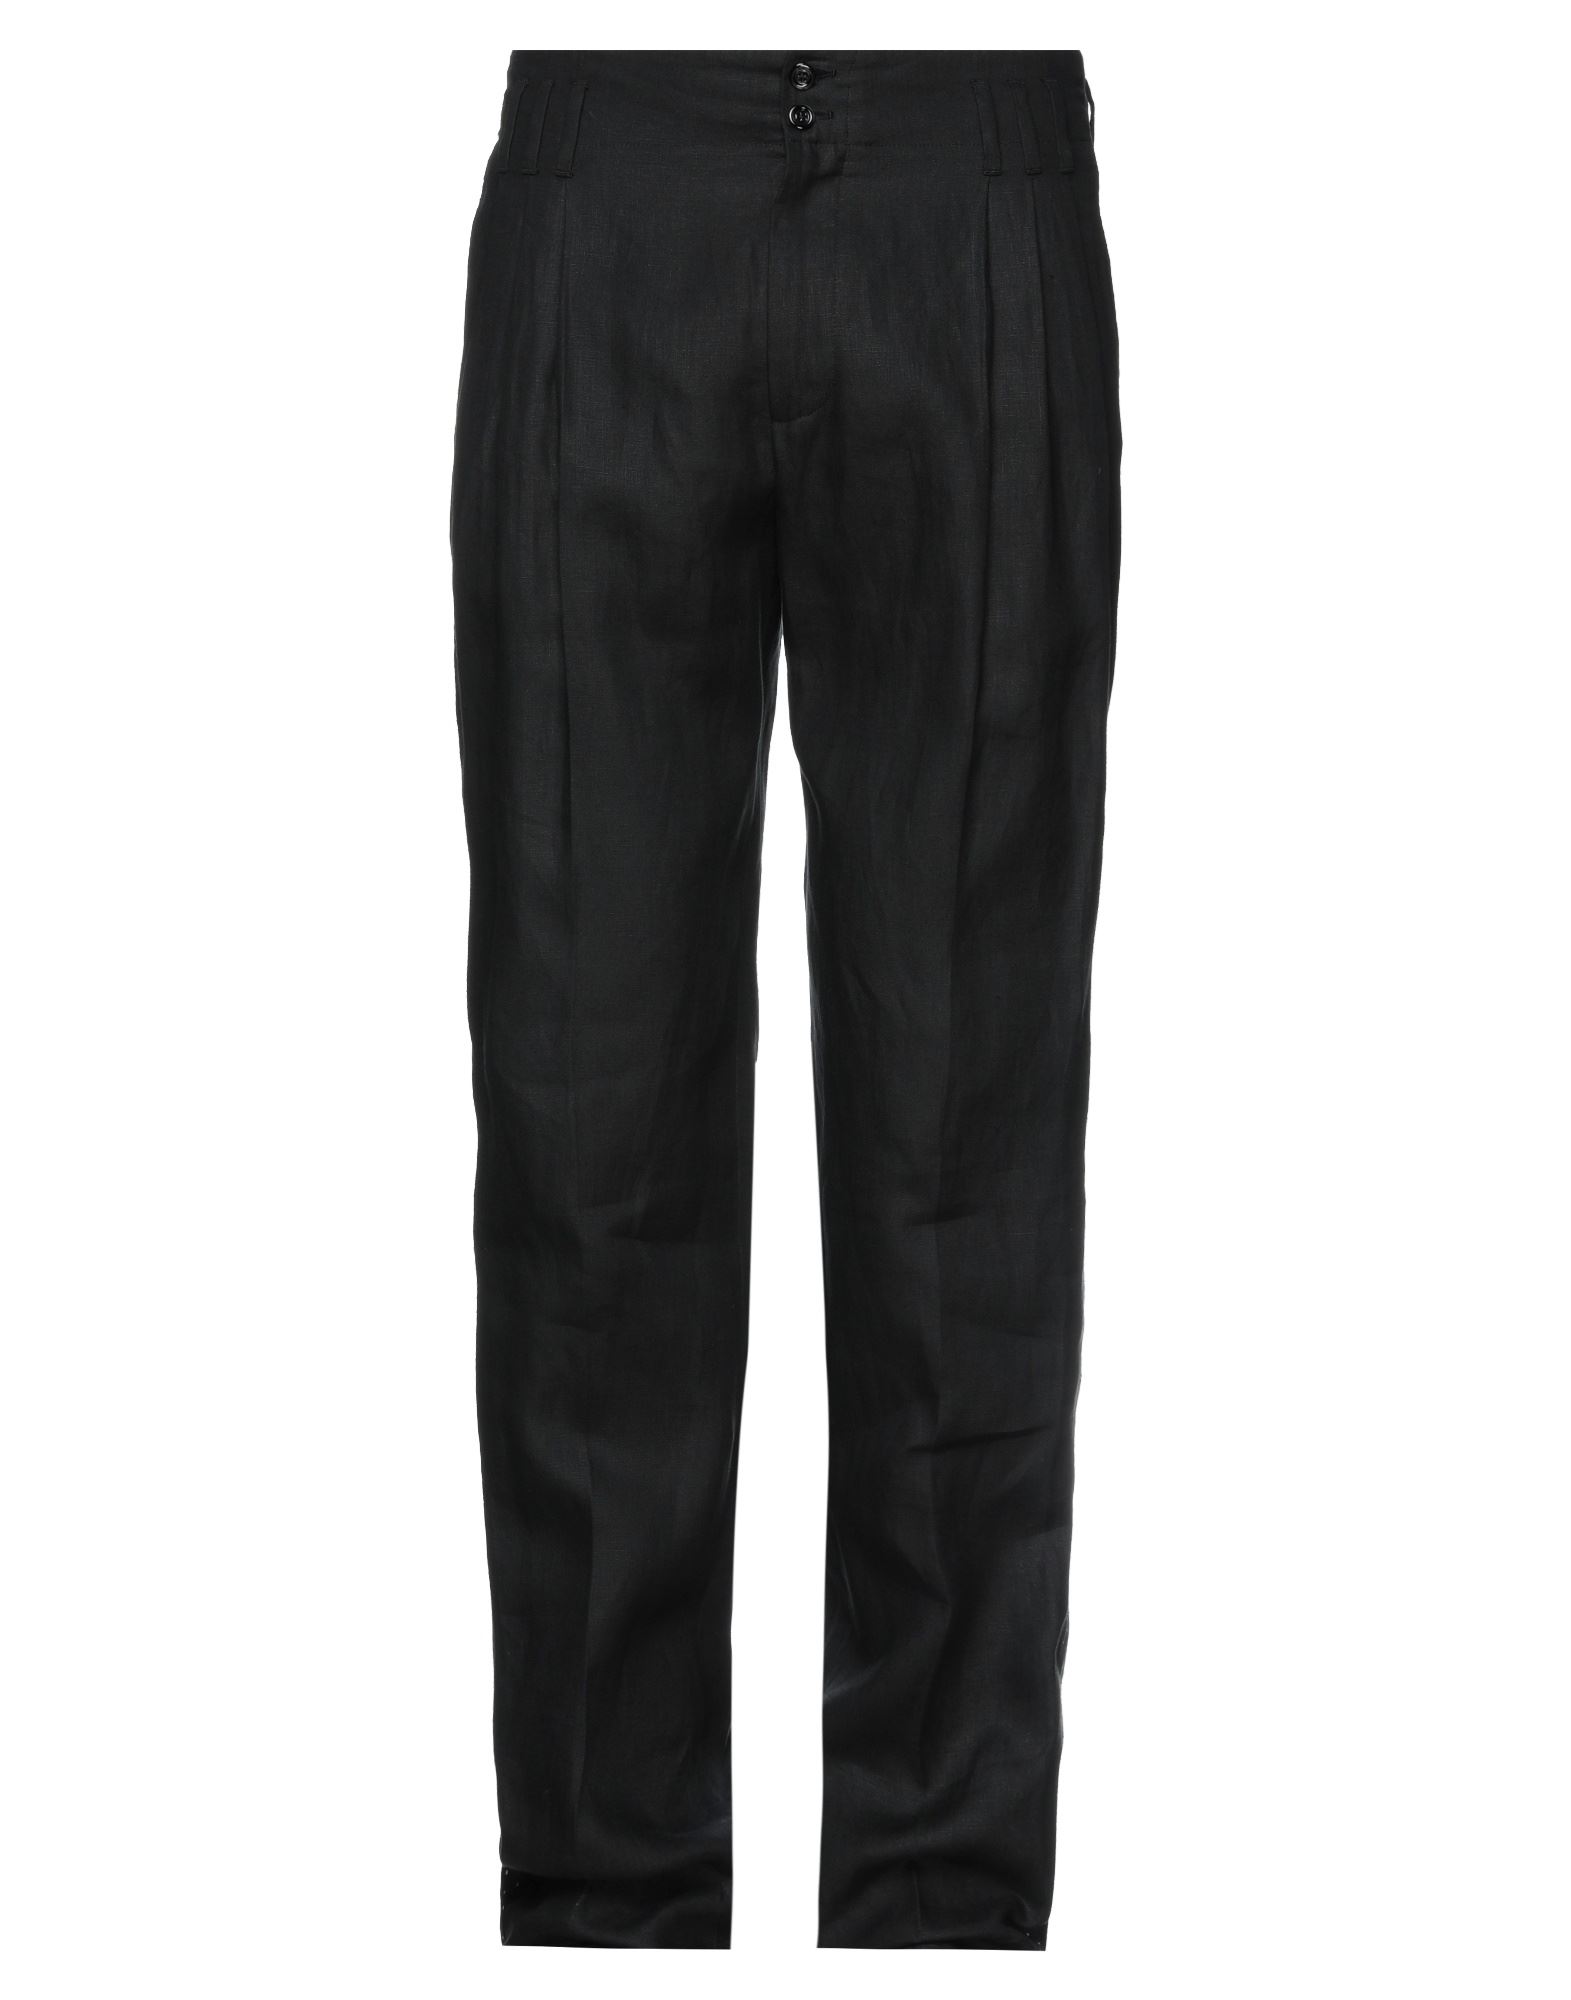 Shop Dolce & Gabbana Man Pants Black Size 32 Linen, Silk